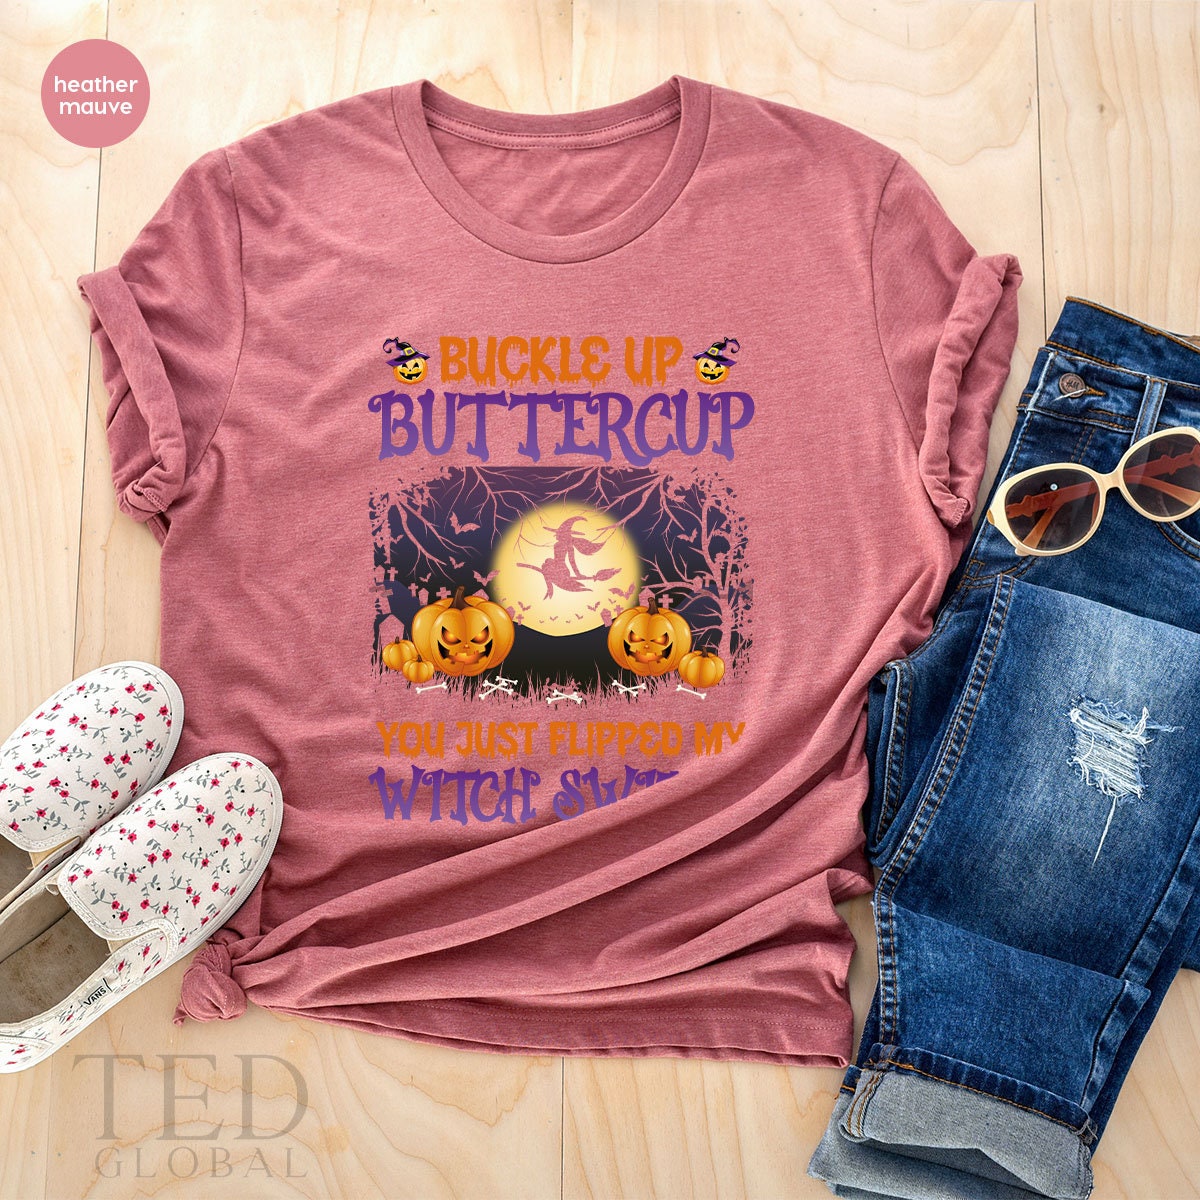 Halloween Shirt, Witch Switch T Shirt, Halloween Party Shirt, Buckle Up Buttercup Shirts, Fall Tee, Cute Pumpkin T-Shirt, Gift For Halloween - Fastdeliverytees.com